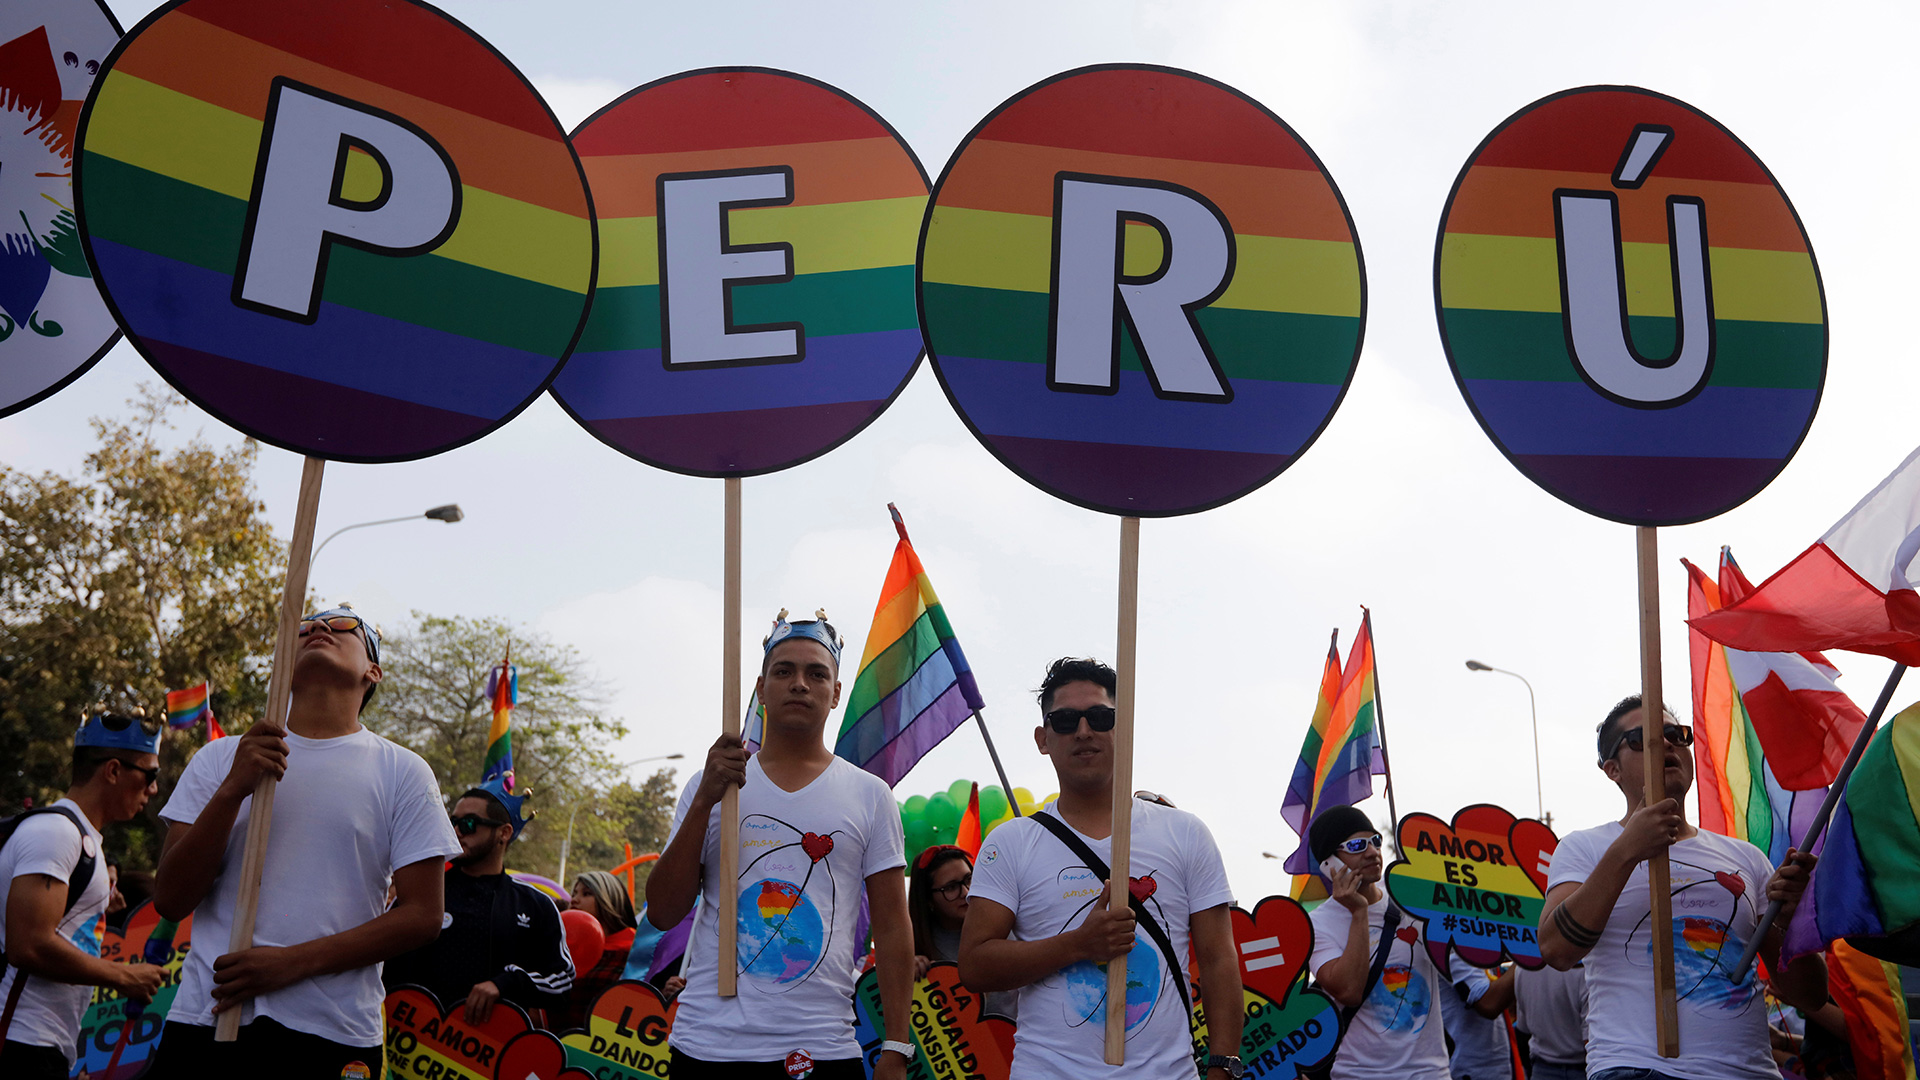 Un pastor evangélico llama en Perú a matar homosexuales